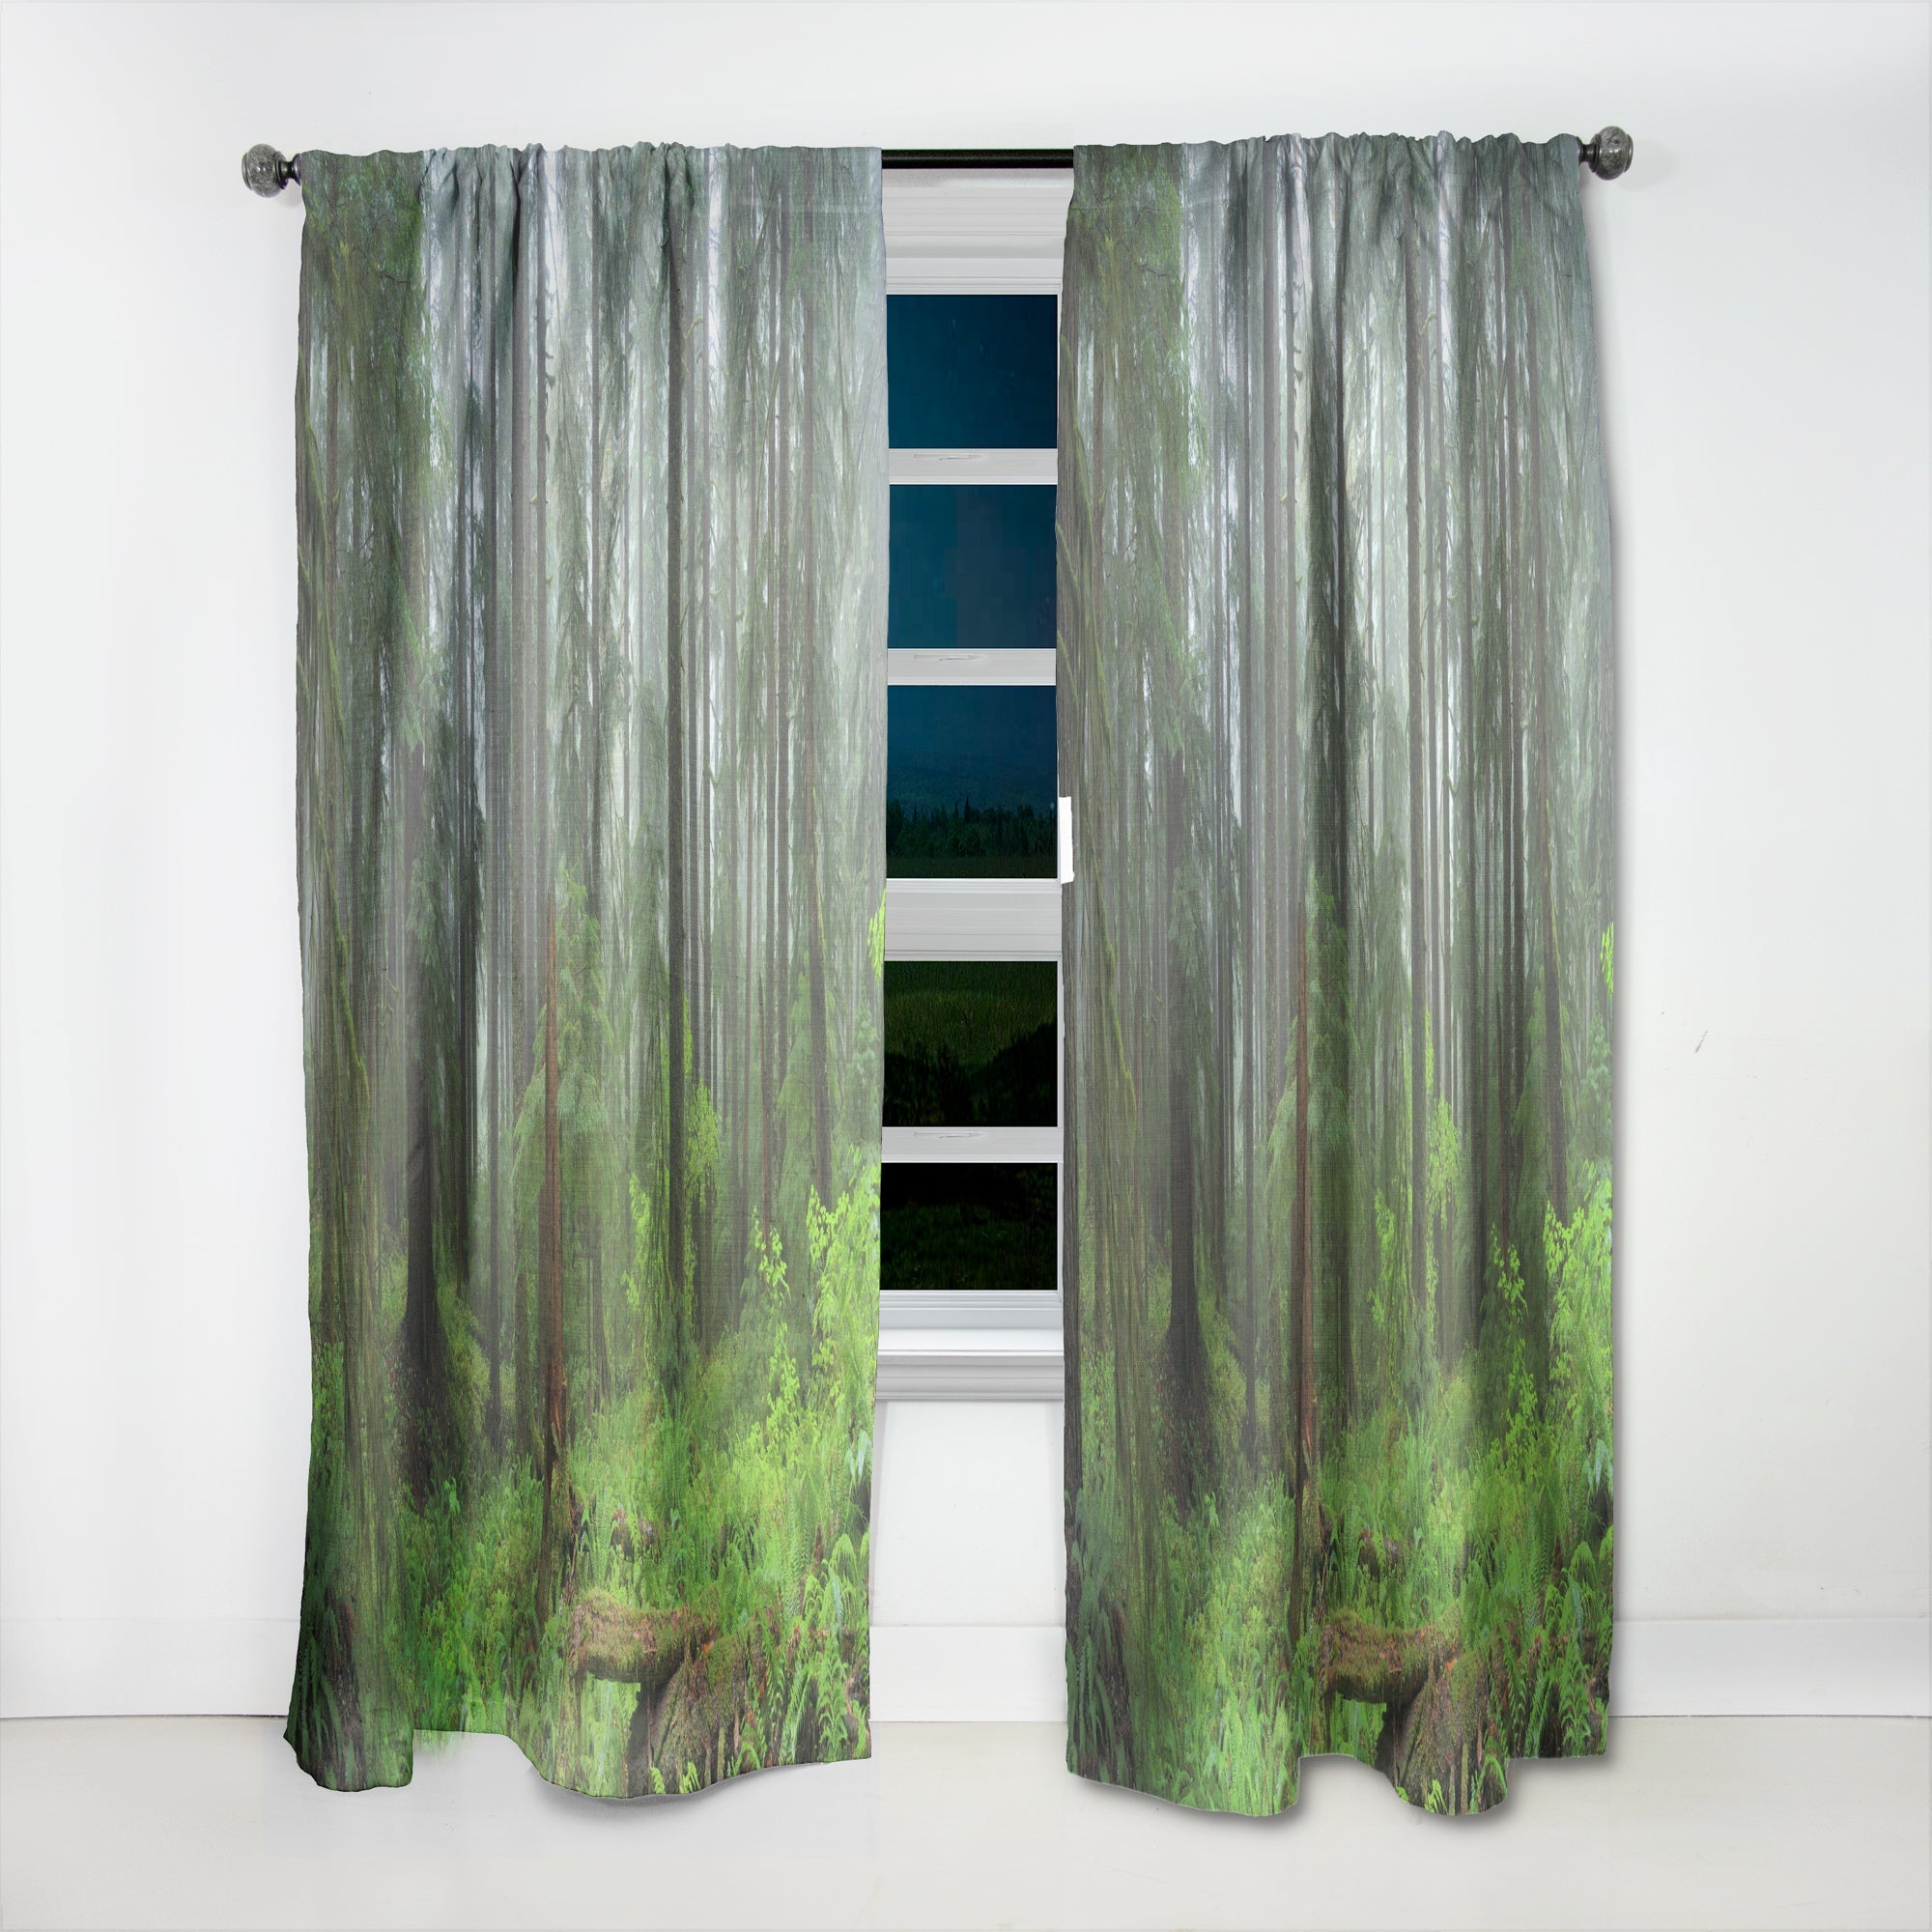 Hoh Rain Forest' Landscape Curtain Panel